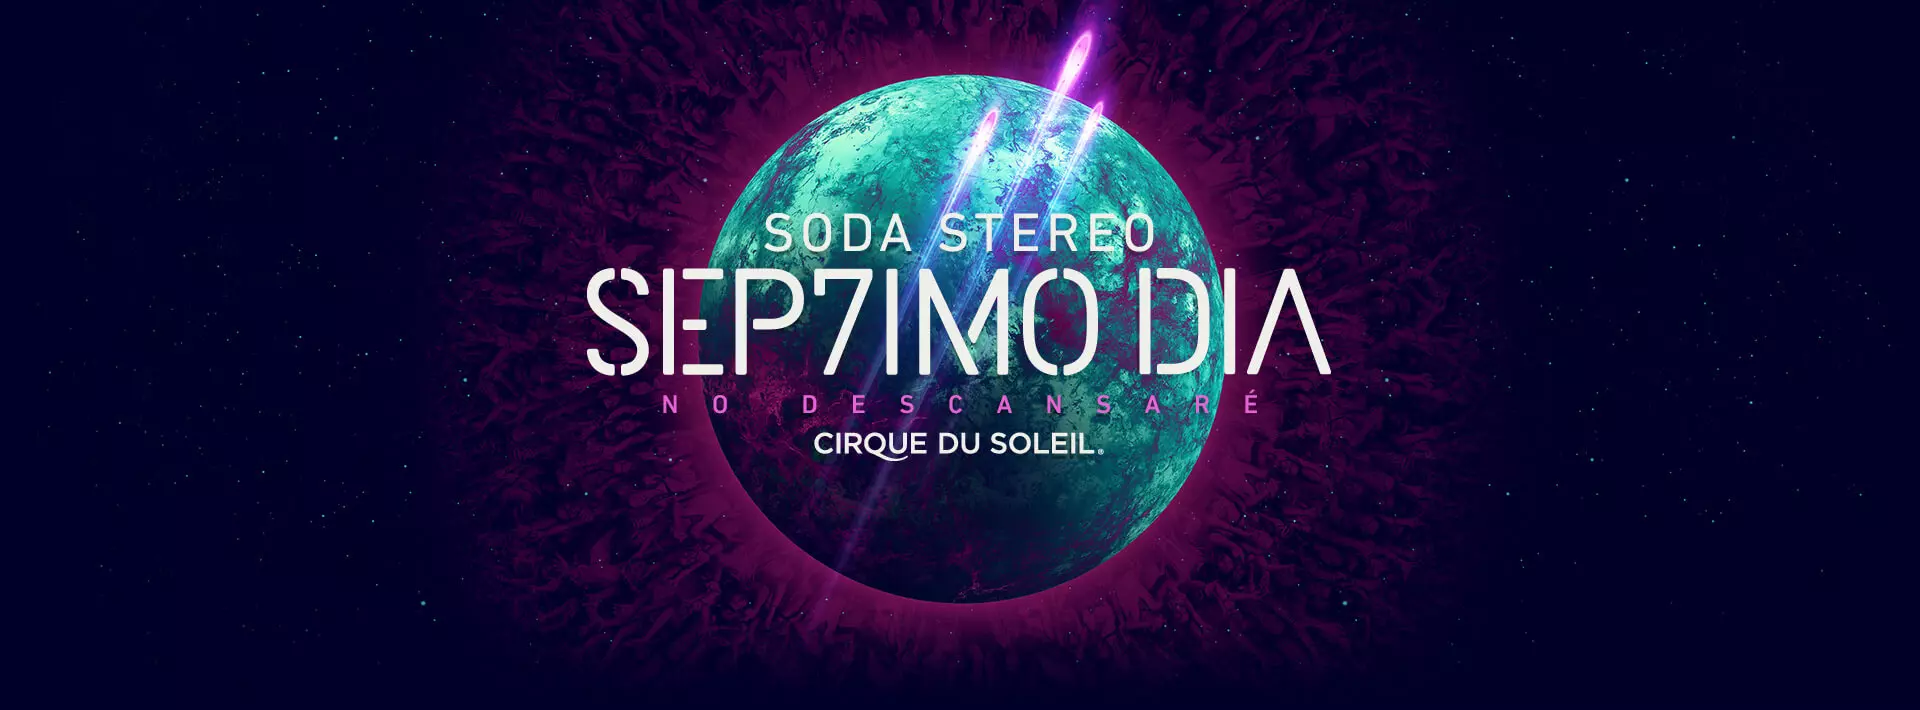 HEROSHOTS 1920x710px - El Cirque du Soleil llega a Bogota con SEP7IMO DIA de Soda Estereo